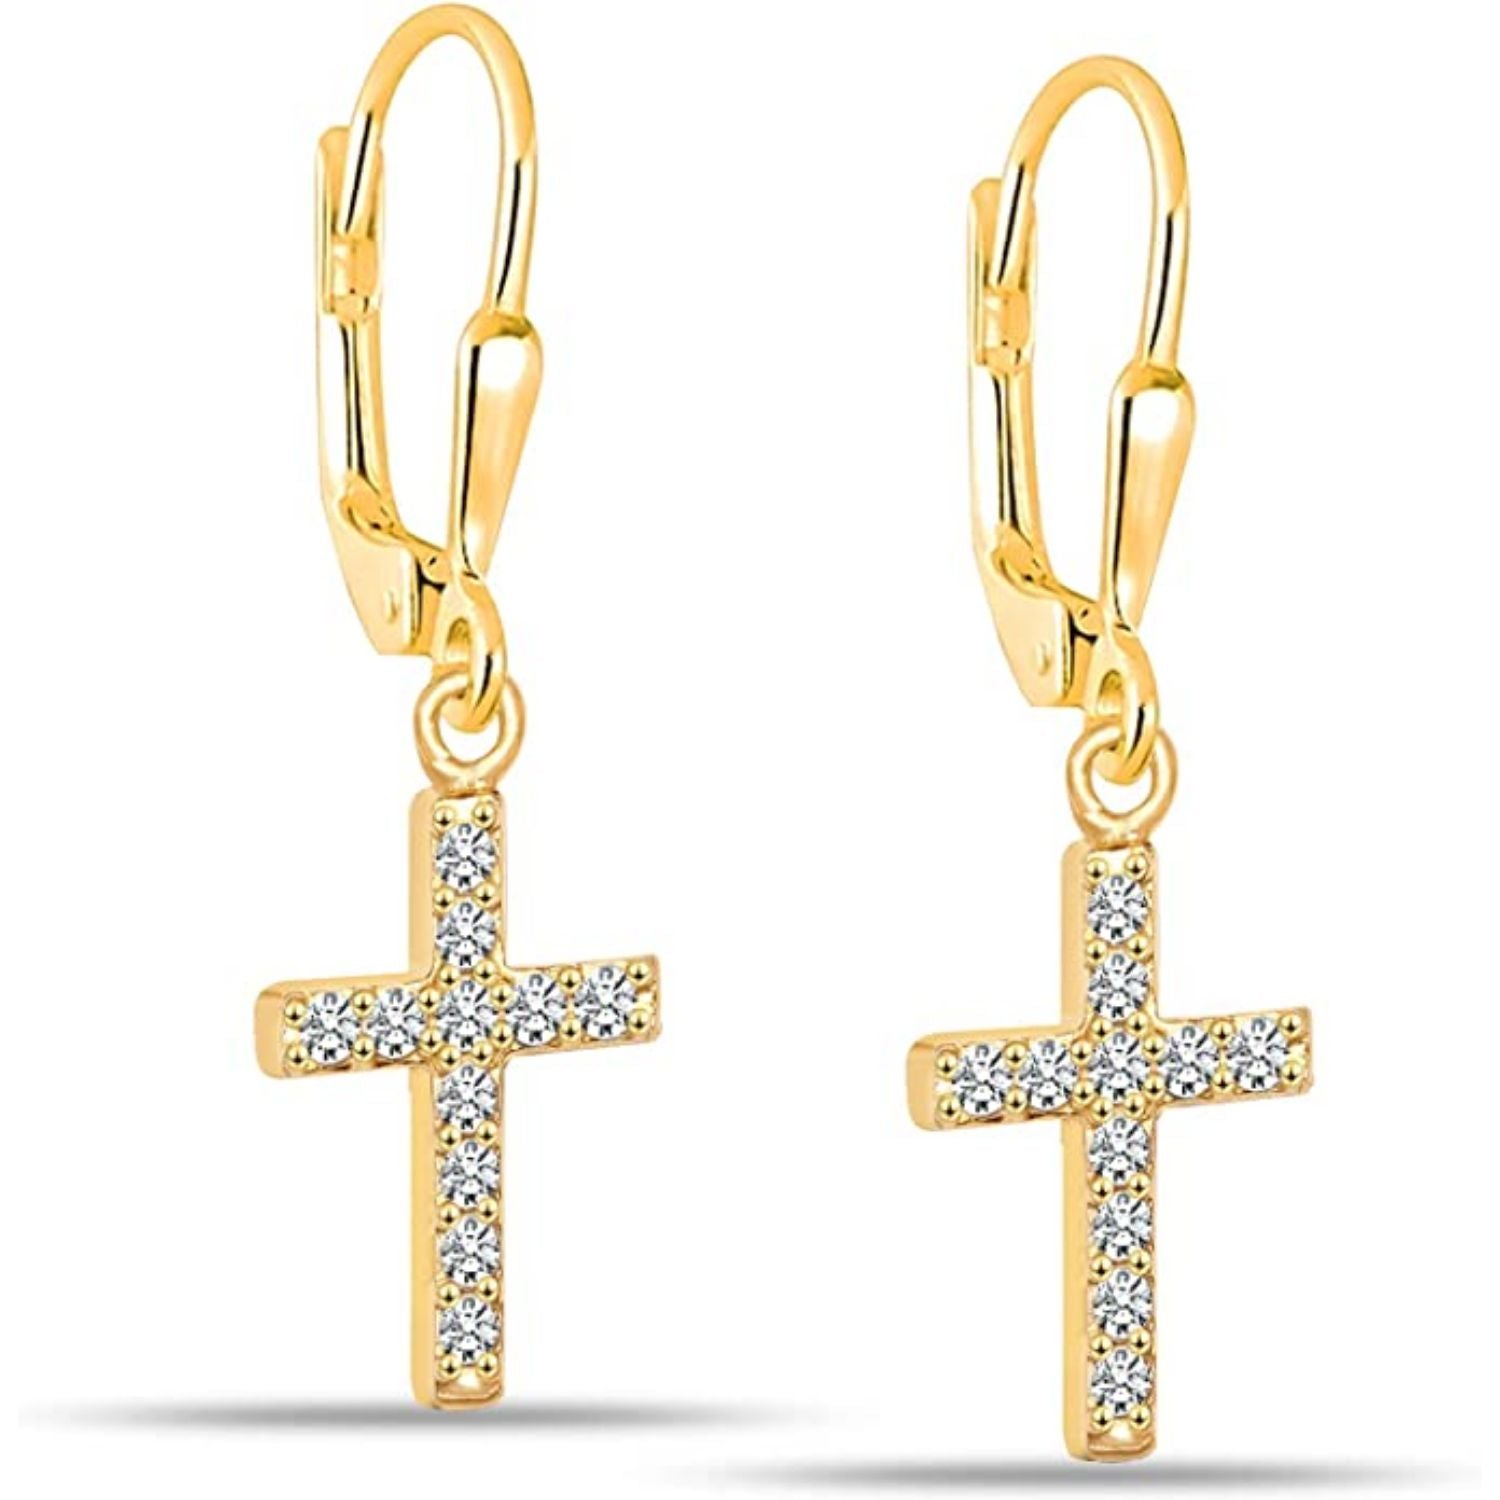 925 Sterling Silver 14K Gold-Plated Zirconia Cross Leverback Earrings for Women